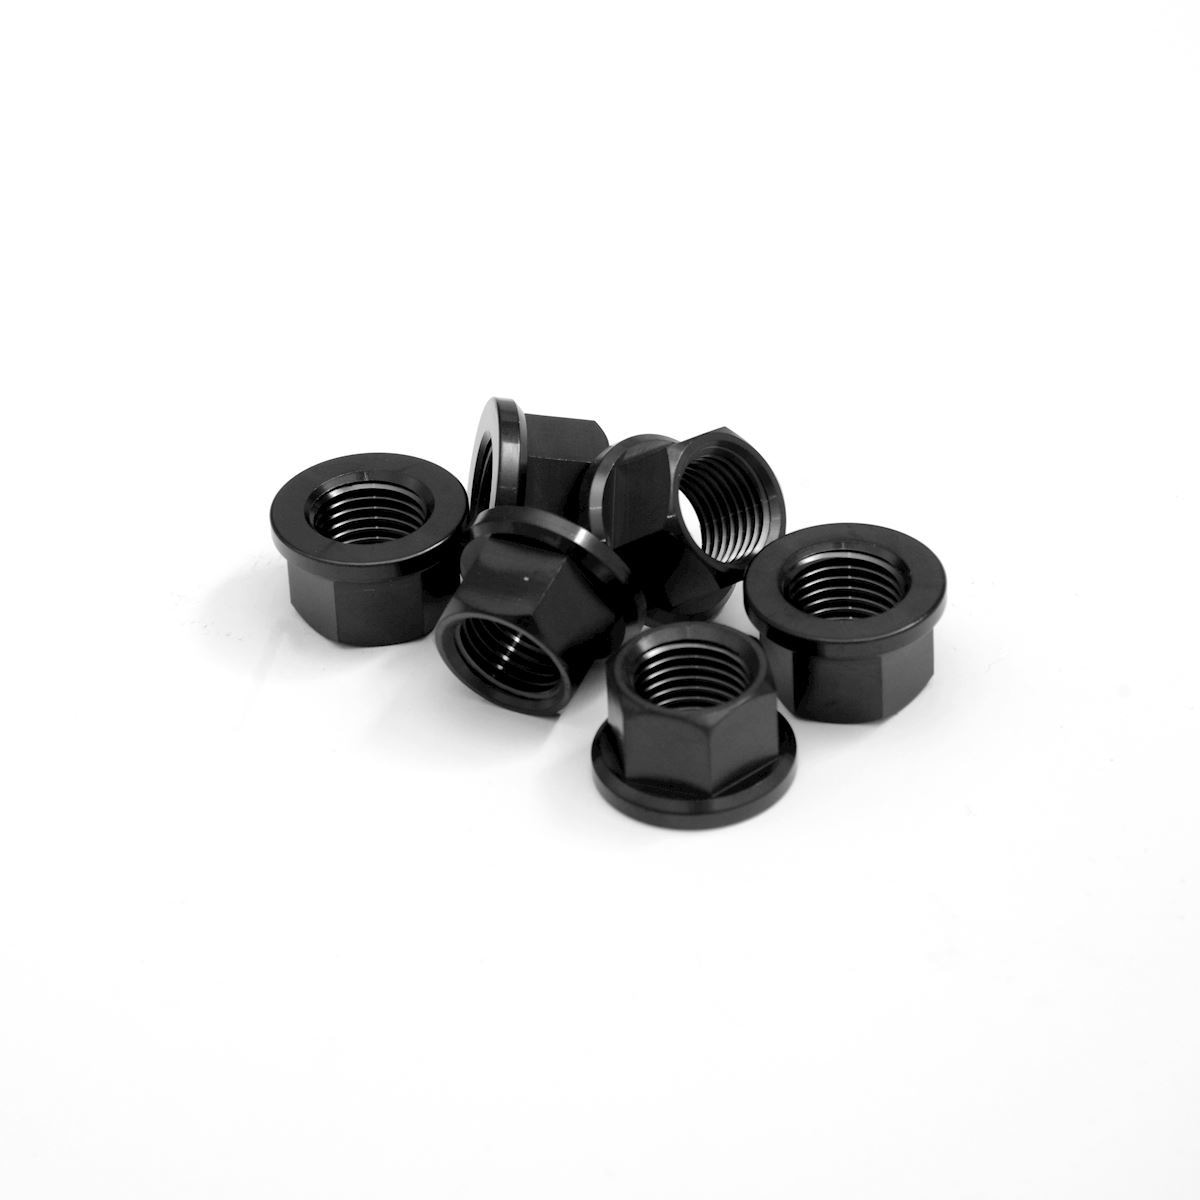 R&G Sprocket Nuts Titanium Black PVD M12X1.50 (6-piece set) Universal